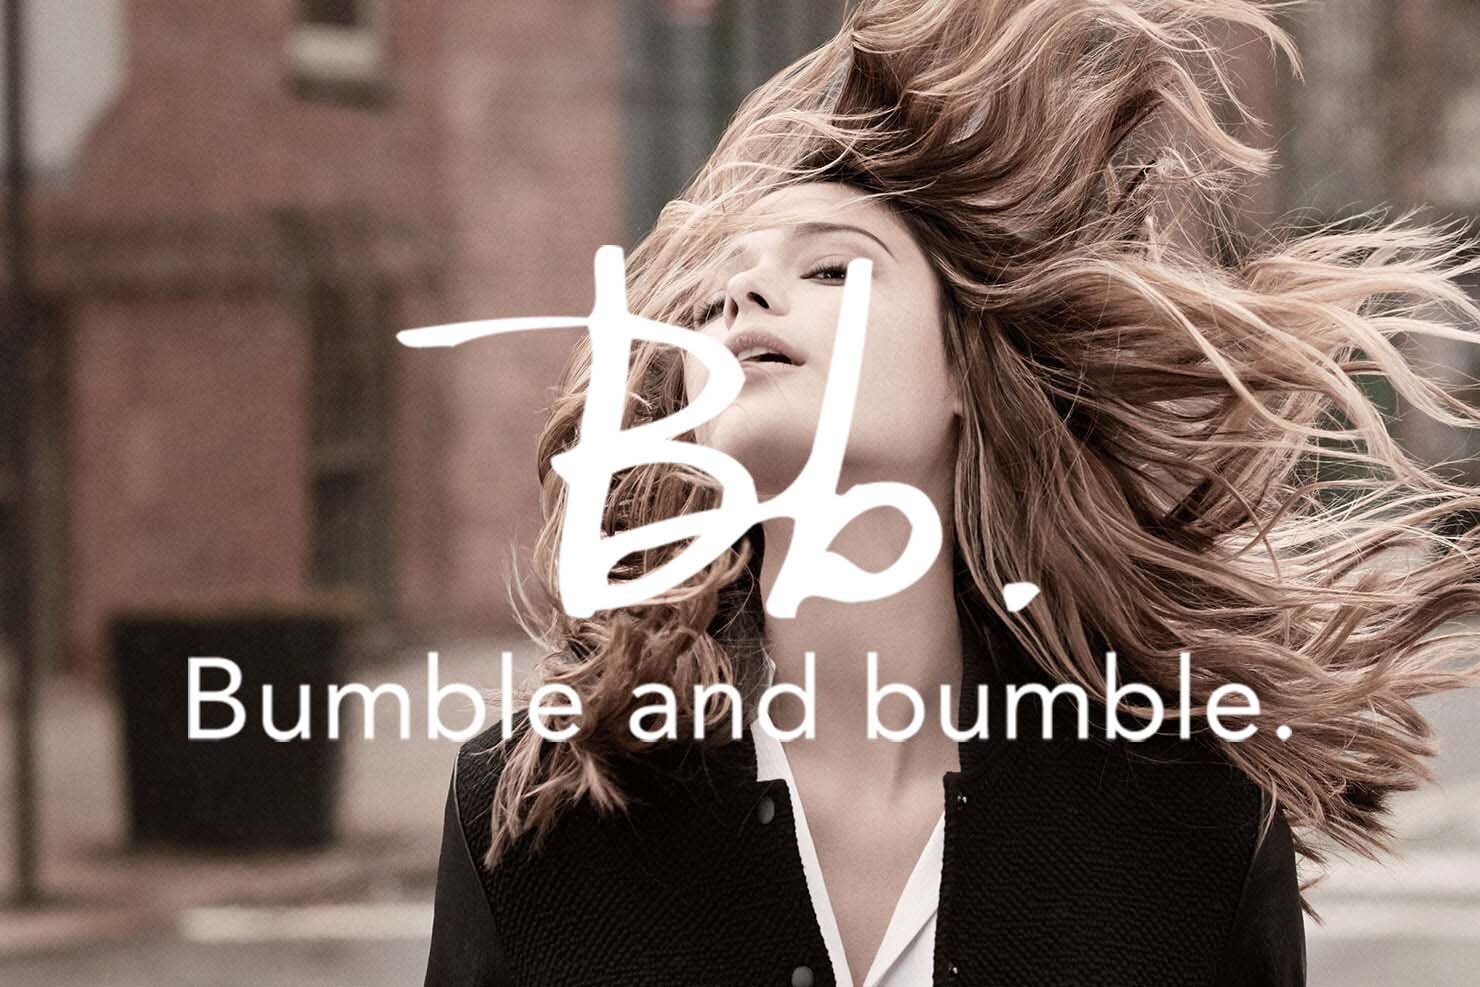 Bumble and bumble. — Salon Optimism